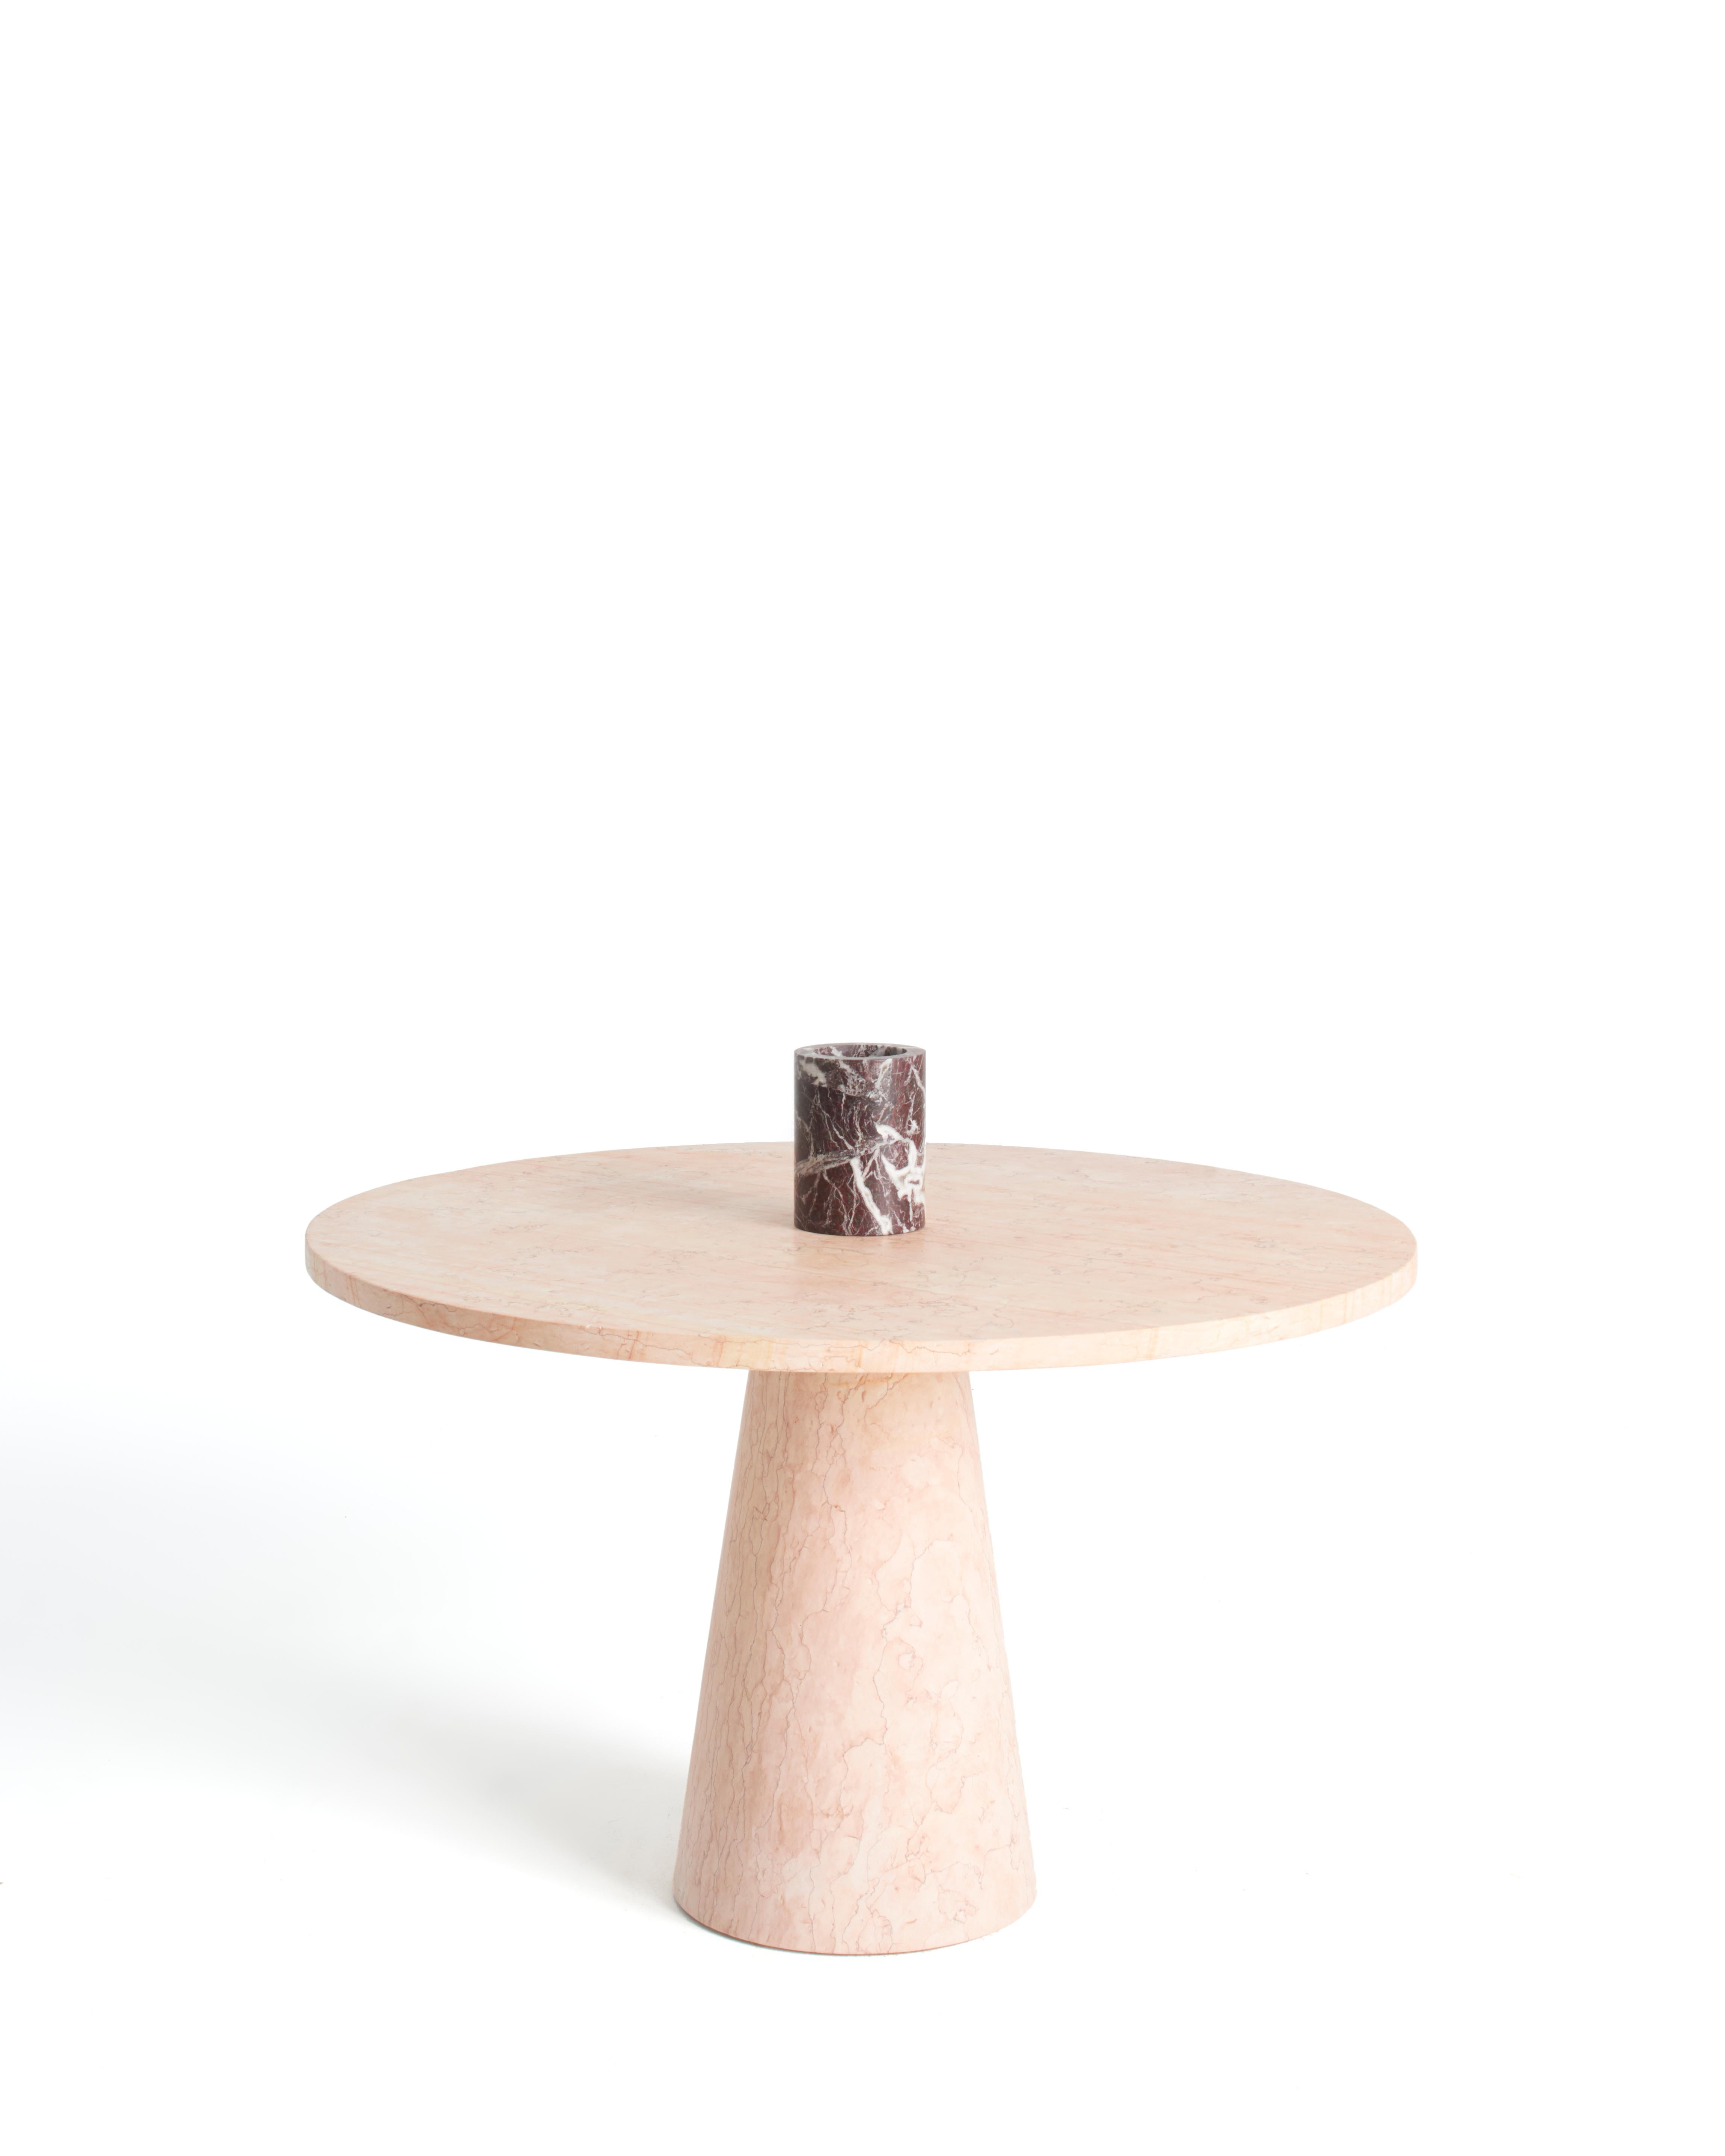 Esstisch aus rosa Marmor, entworfen von Karen Chekerdjian, Teil der Inside Out Collection - Accessoires (Obstschale, Kerzen, Blumenvasen) Tische aus rotem und schwarzem Marmor. Er kann mit dem separat erhältlichen Zubehör individuell gestaltet